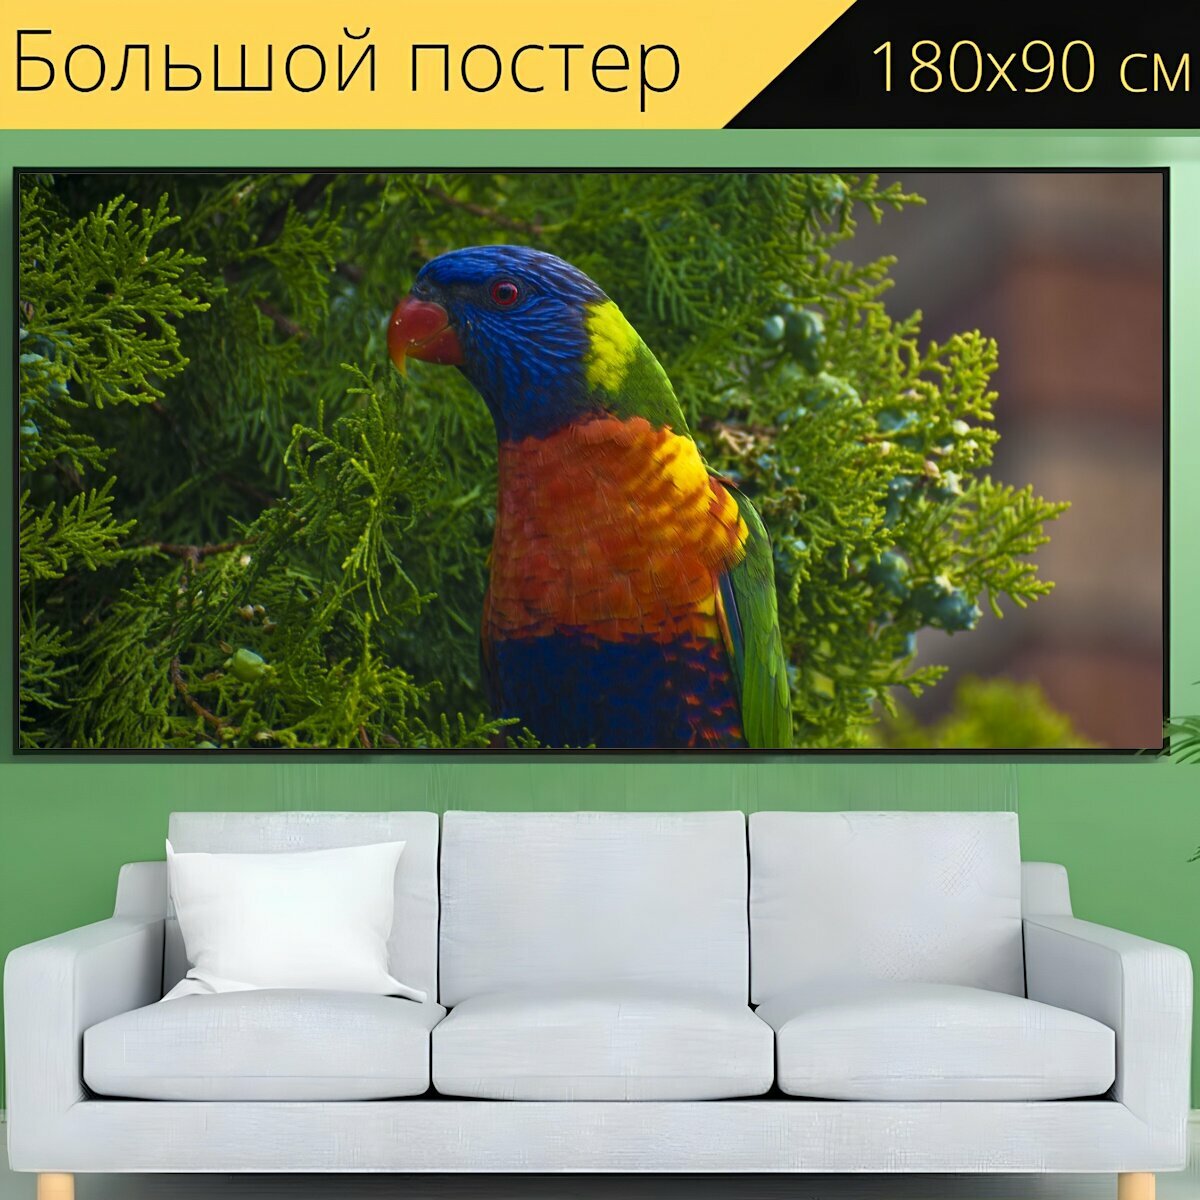 Большой постер "Птица попугай мускусный лорикет" 180 x 90 см. для интерьера